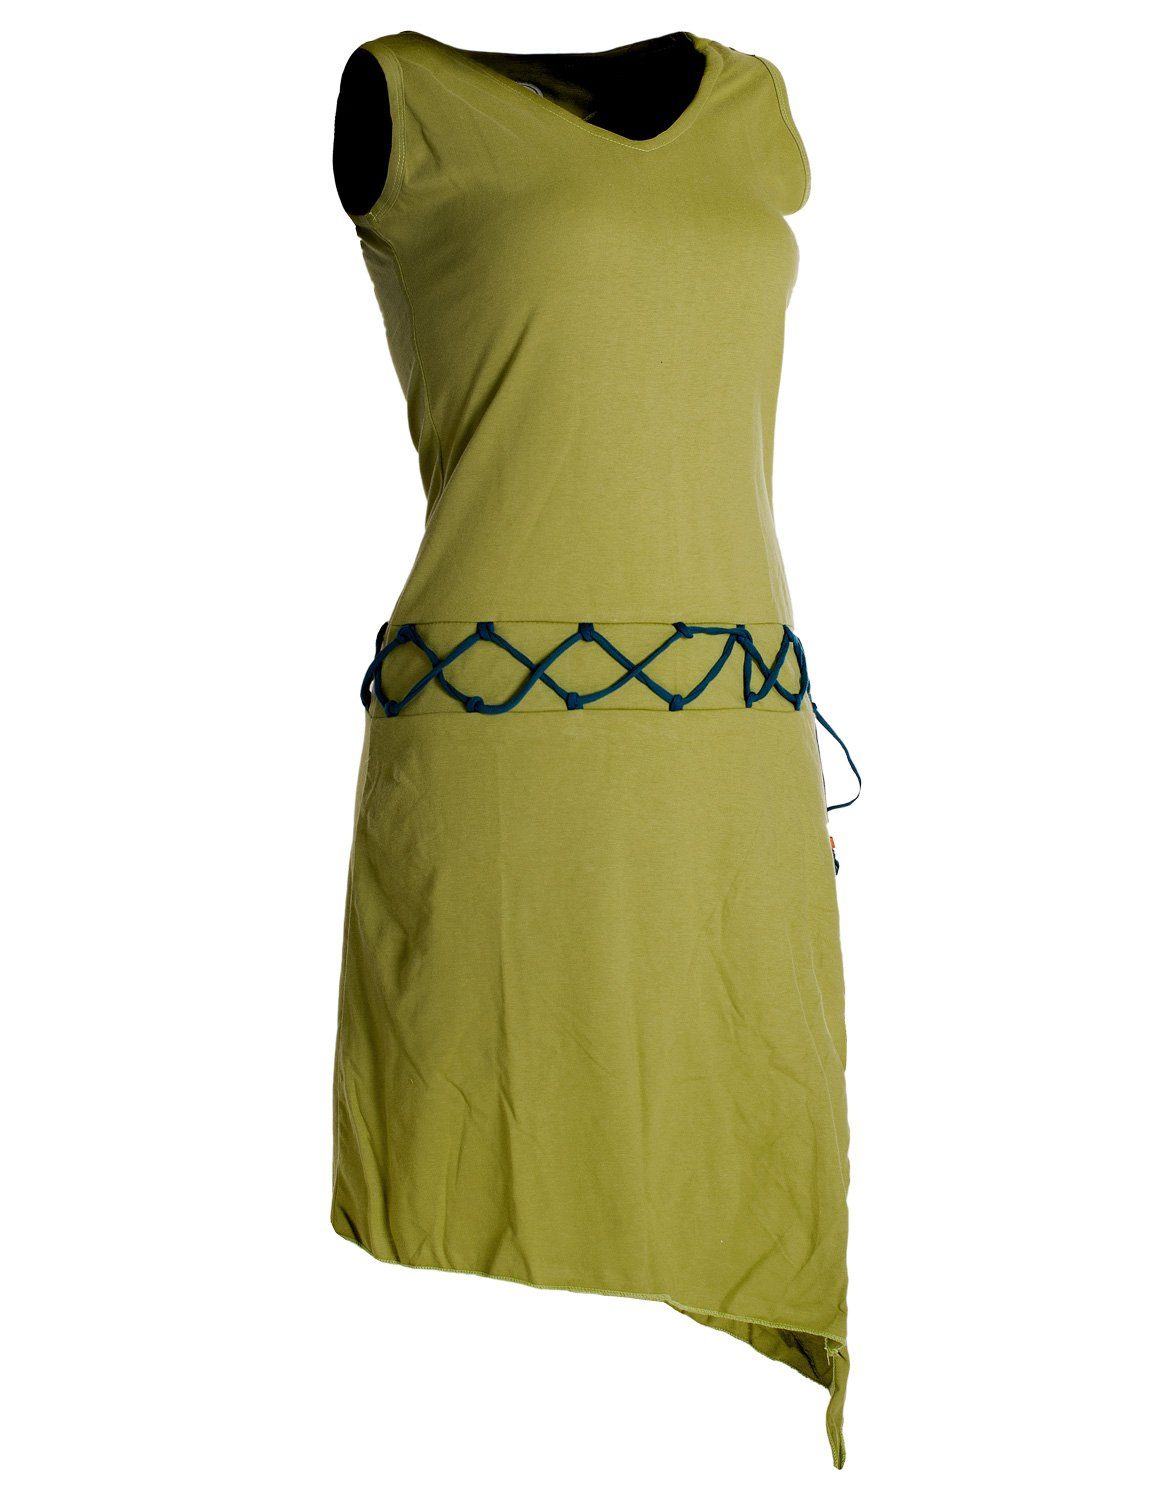 Vishes Sommerkleid Ärmelloses Kleid Beinausschnitt Goa Style Elfen asymmetrisch hellgrün Boho, Hippie, Gürtel-Schnürung